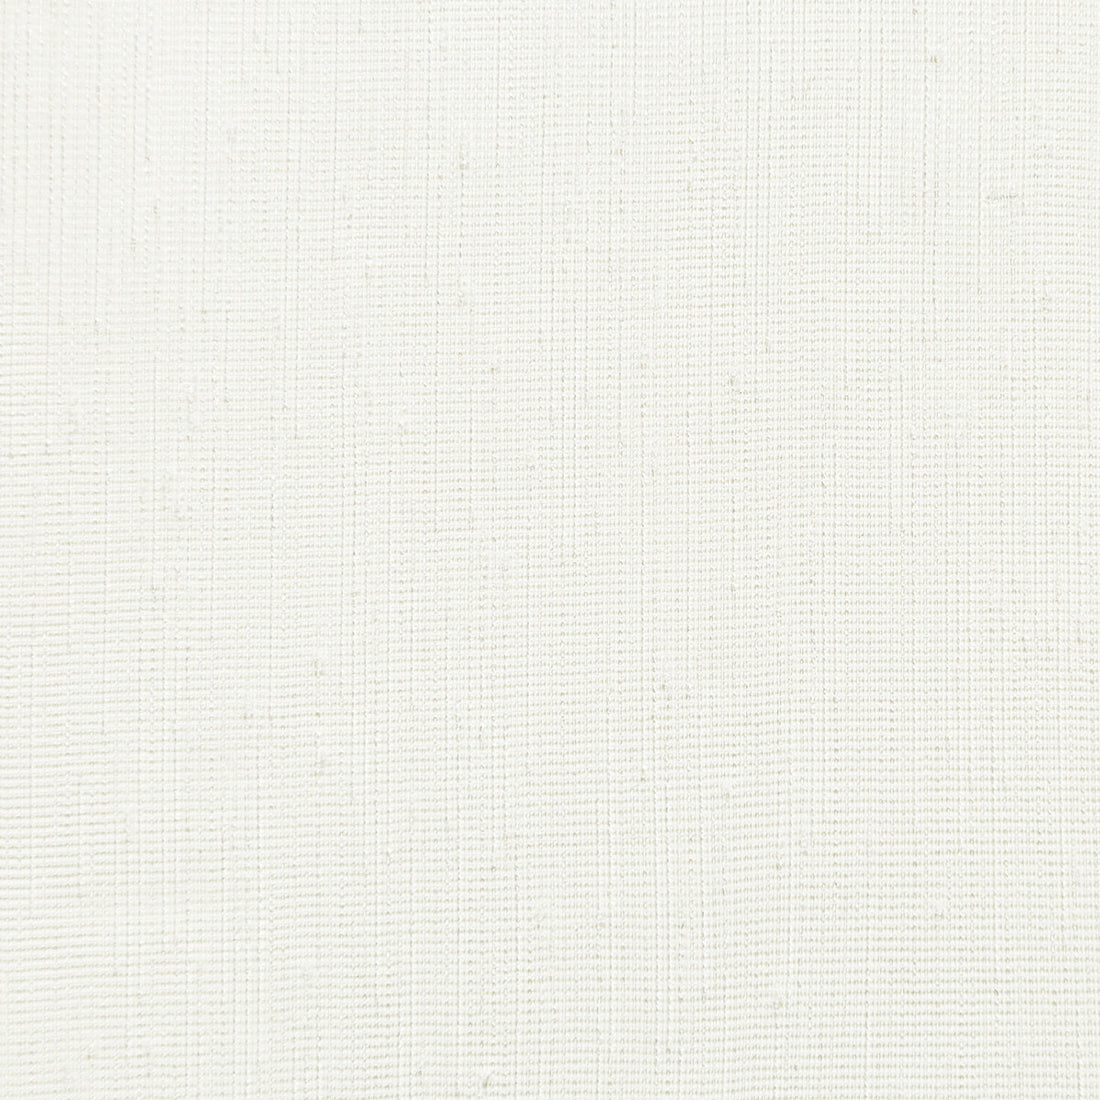 Kravet Basics fabric in 4767-1 color - pattern 4767.1.0 - by Kravet Basics